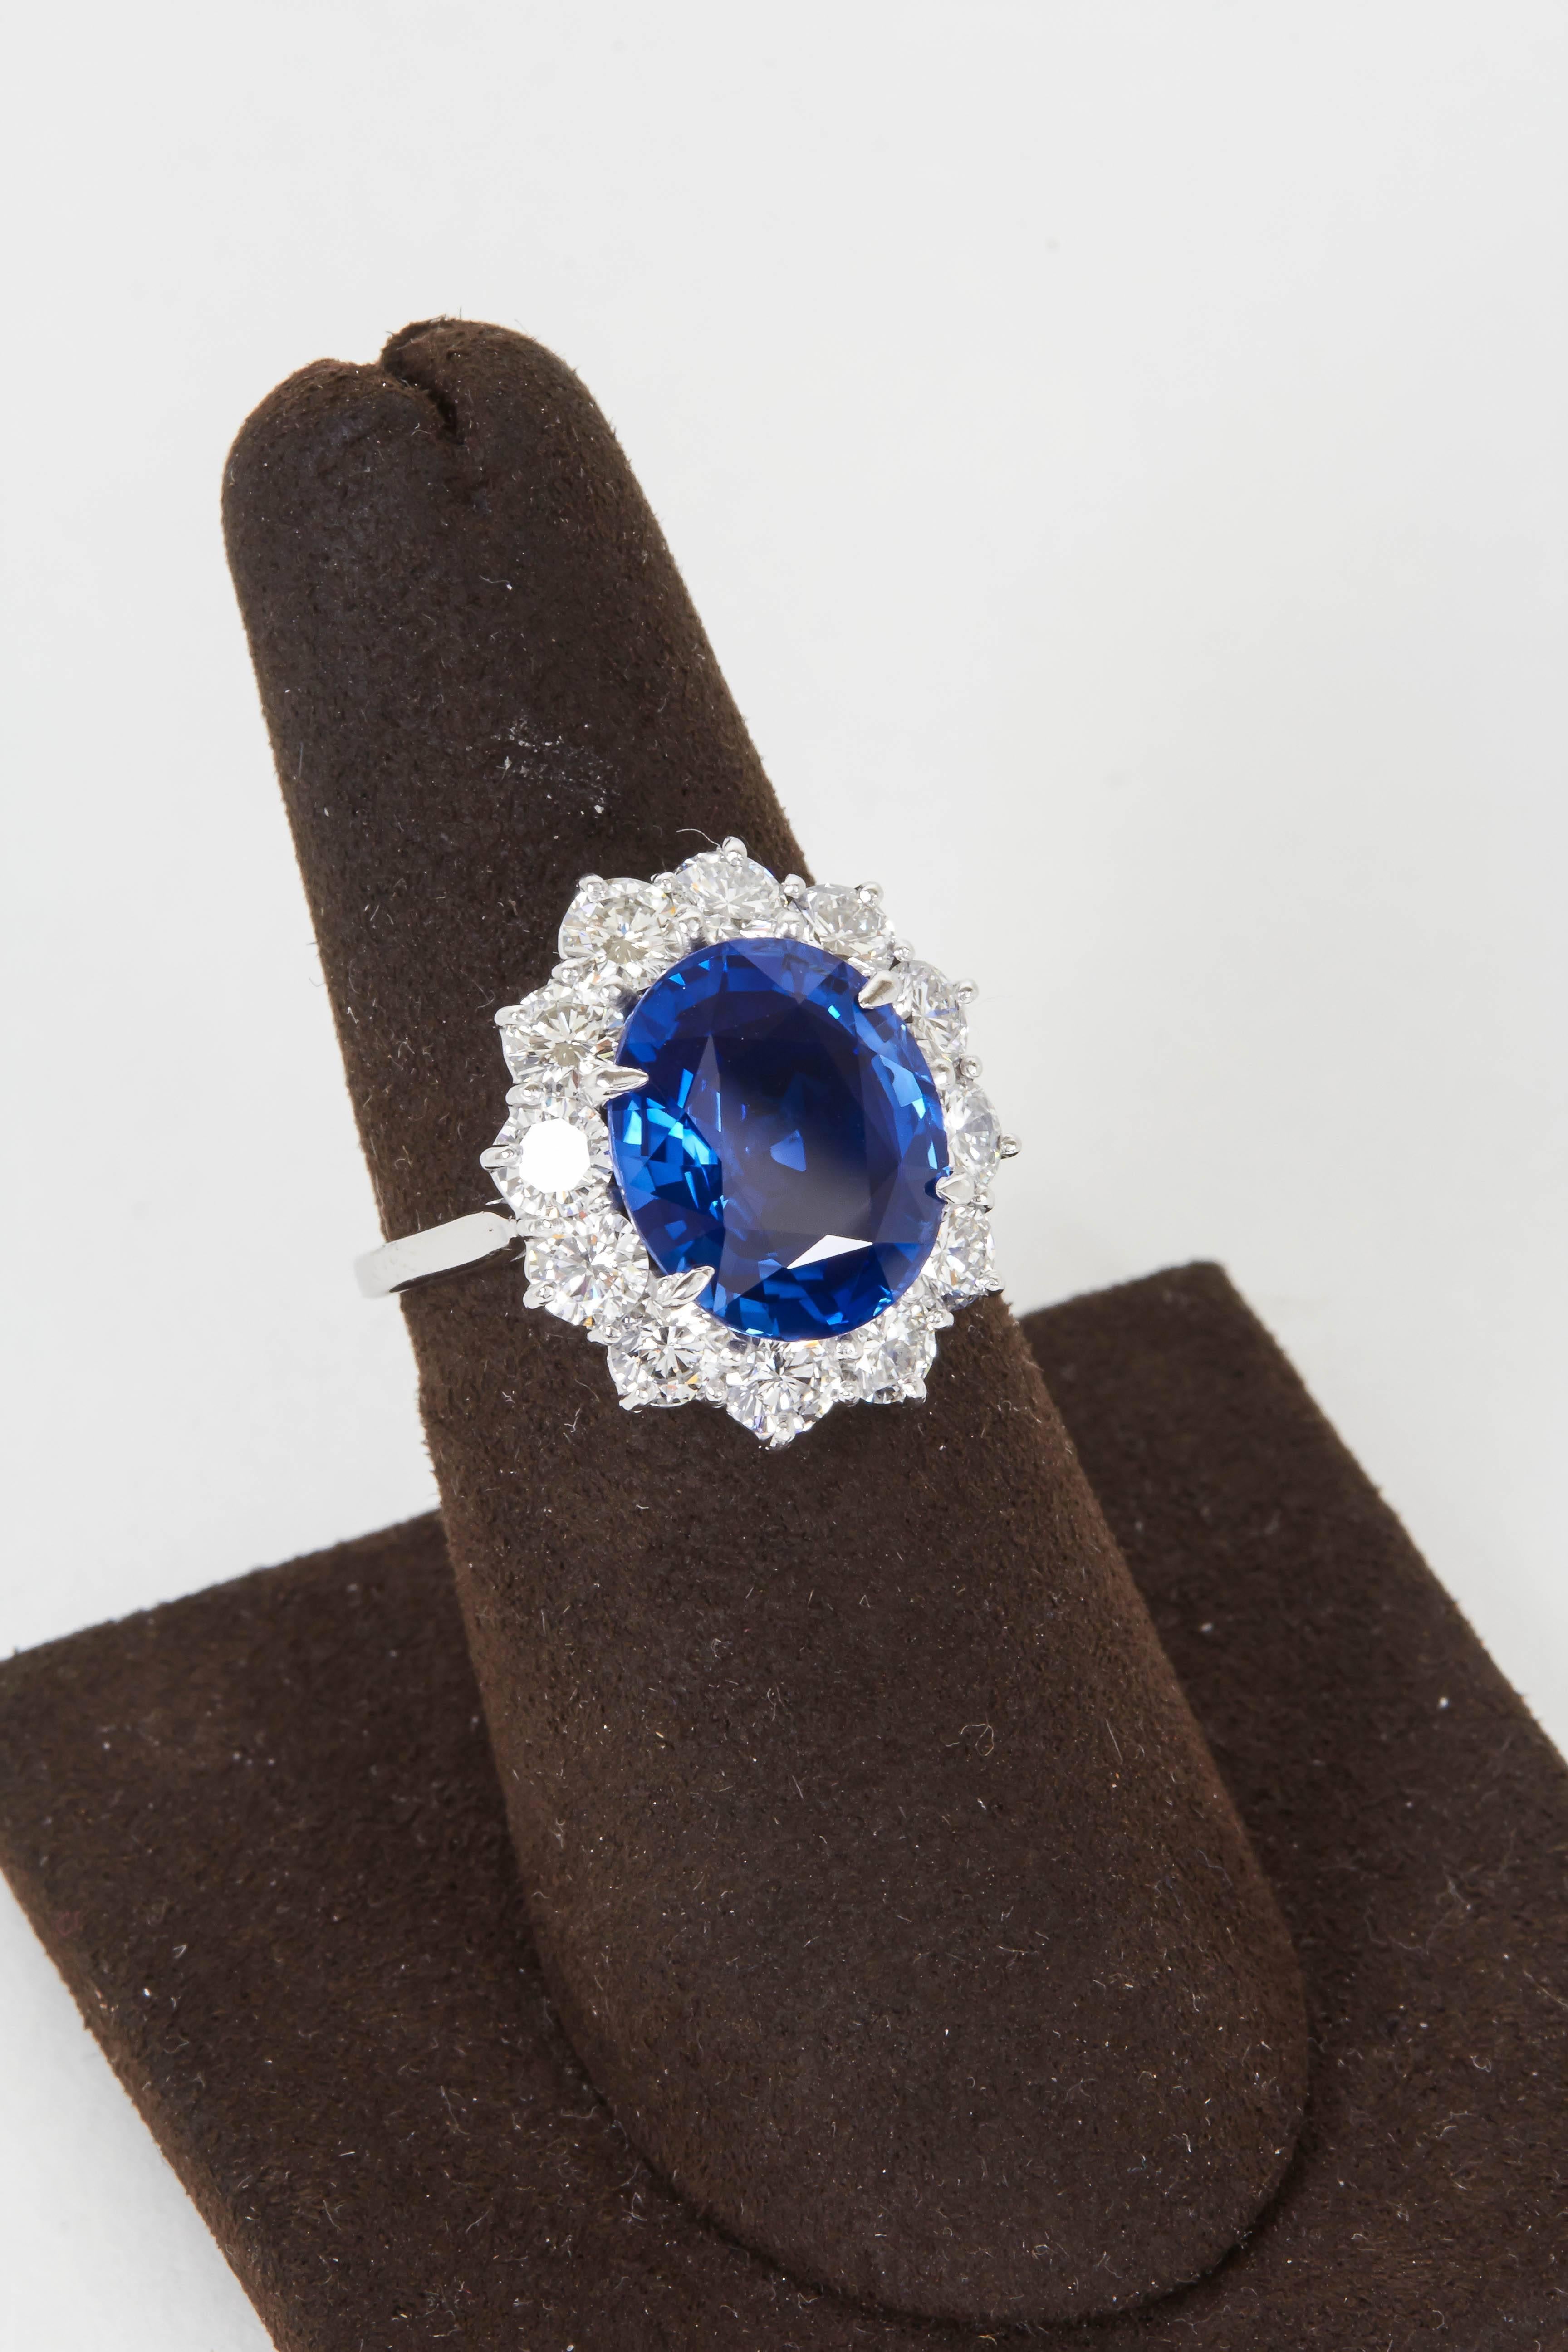 

Ein wunderschöner Saphir, eingefasst in einen eleganten und zeitlosen Ring. 

6.02 Karat ovaler feiner blauer Saphir mit außergewöhnlicher Farbe und Brillanz, gefasst in einer Platin- und Diamantfassung mit 2,88 Karat runden Diamanten im